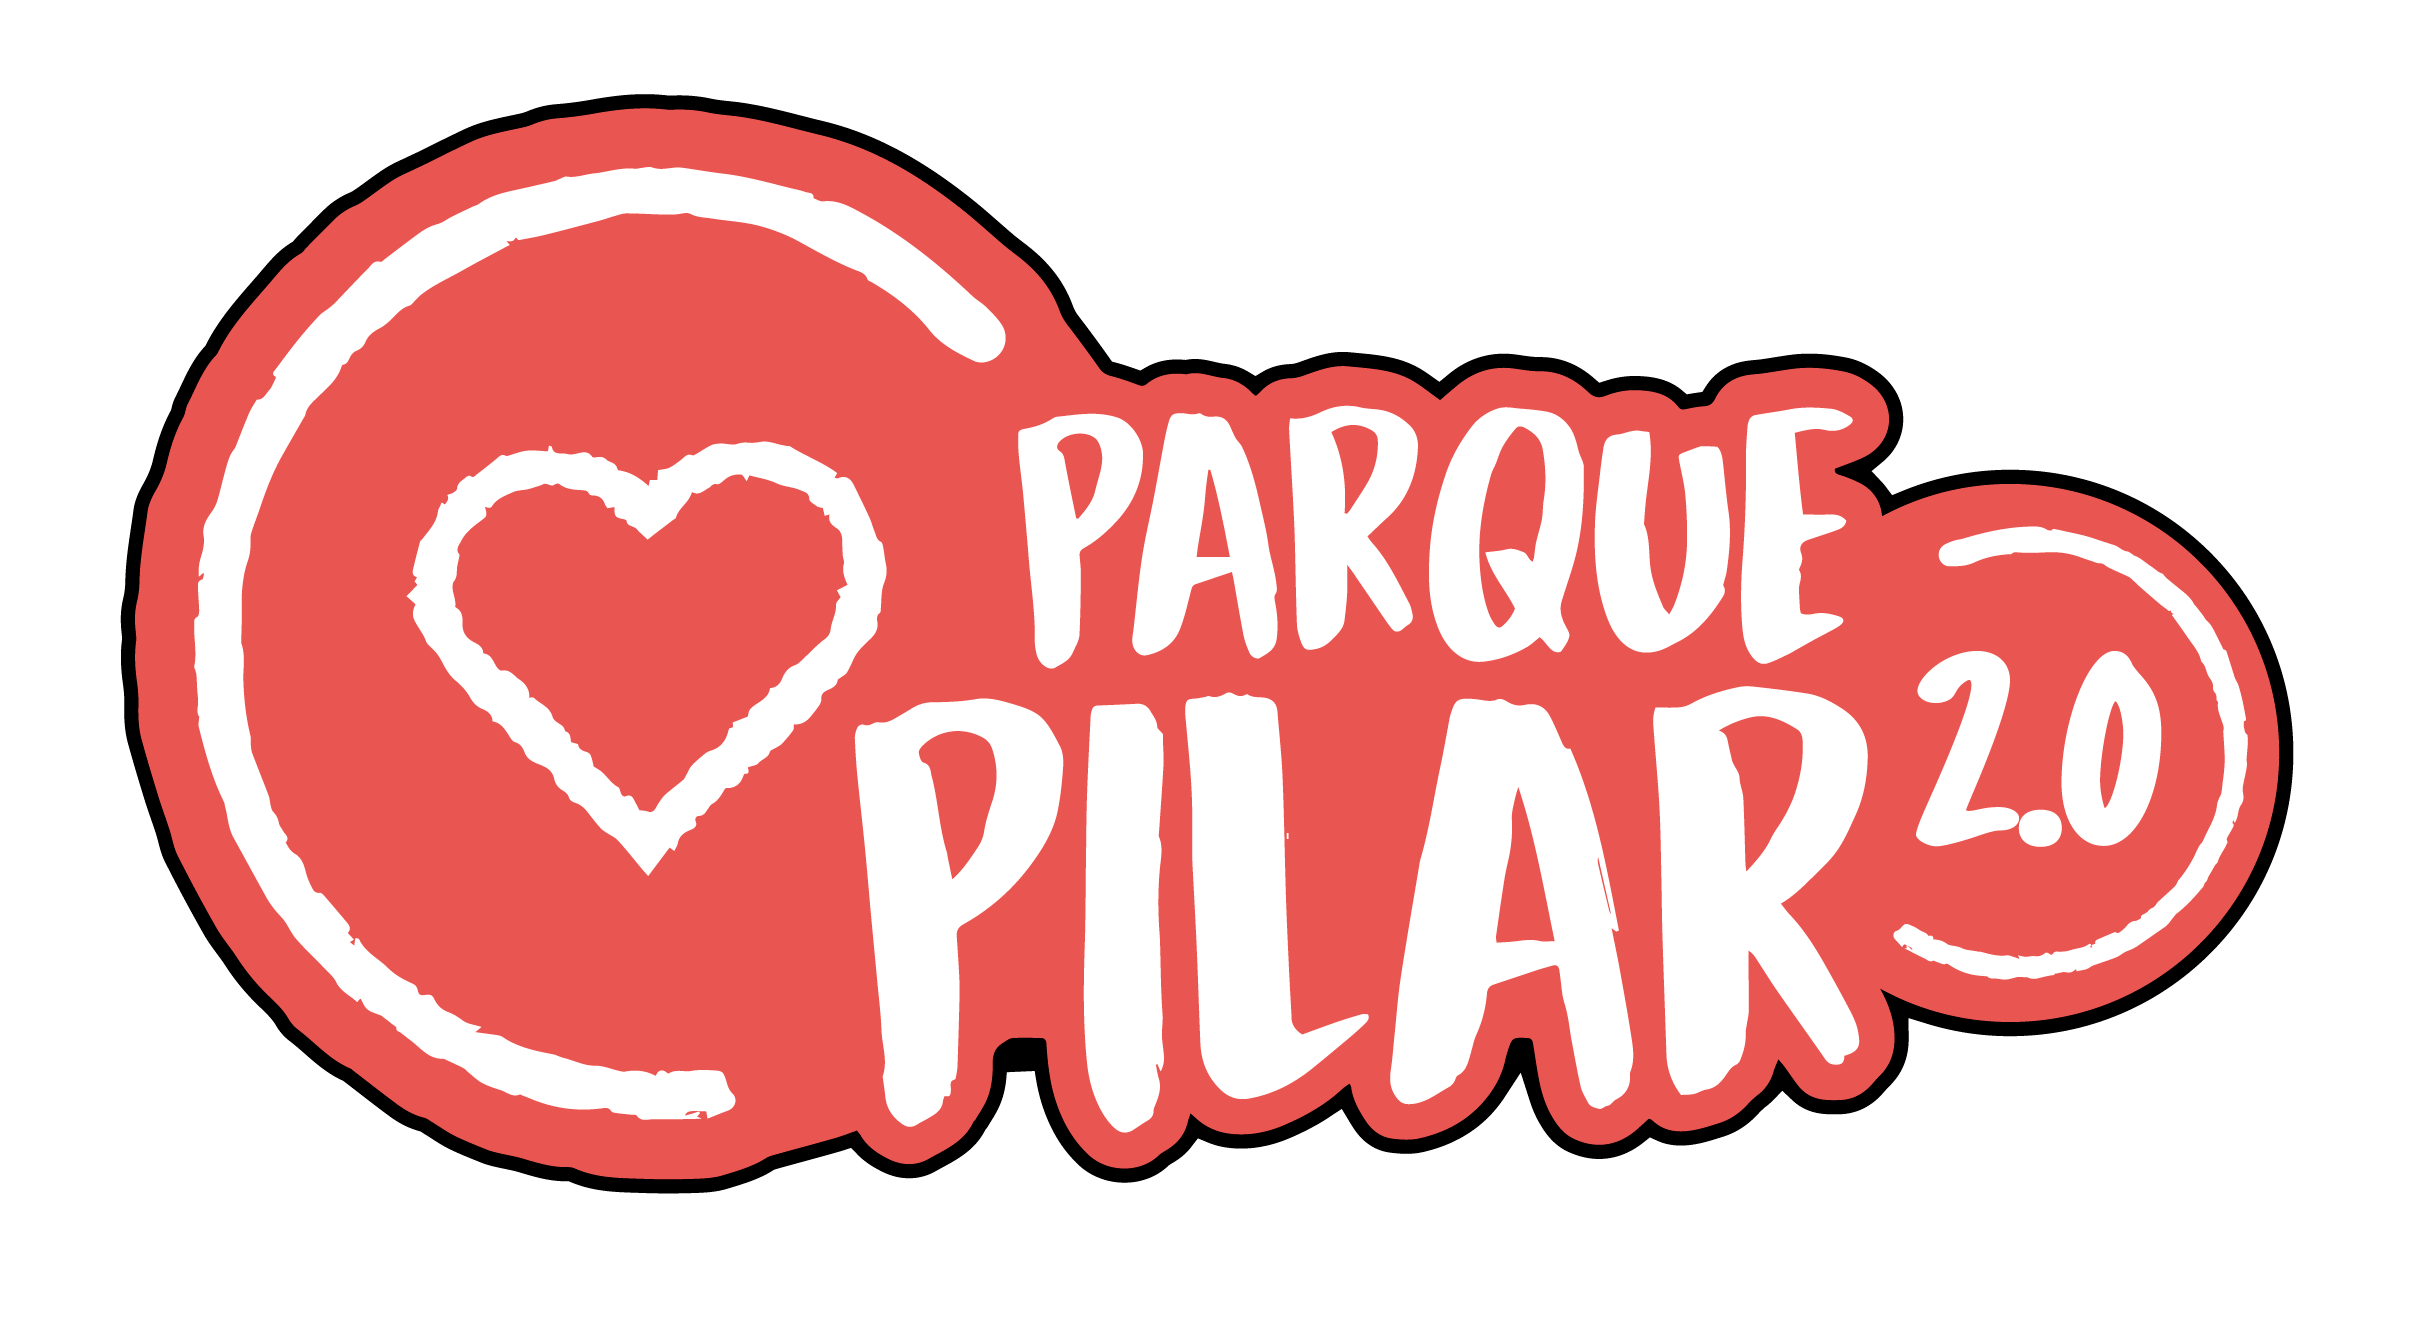 Parque Pilar 2.0